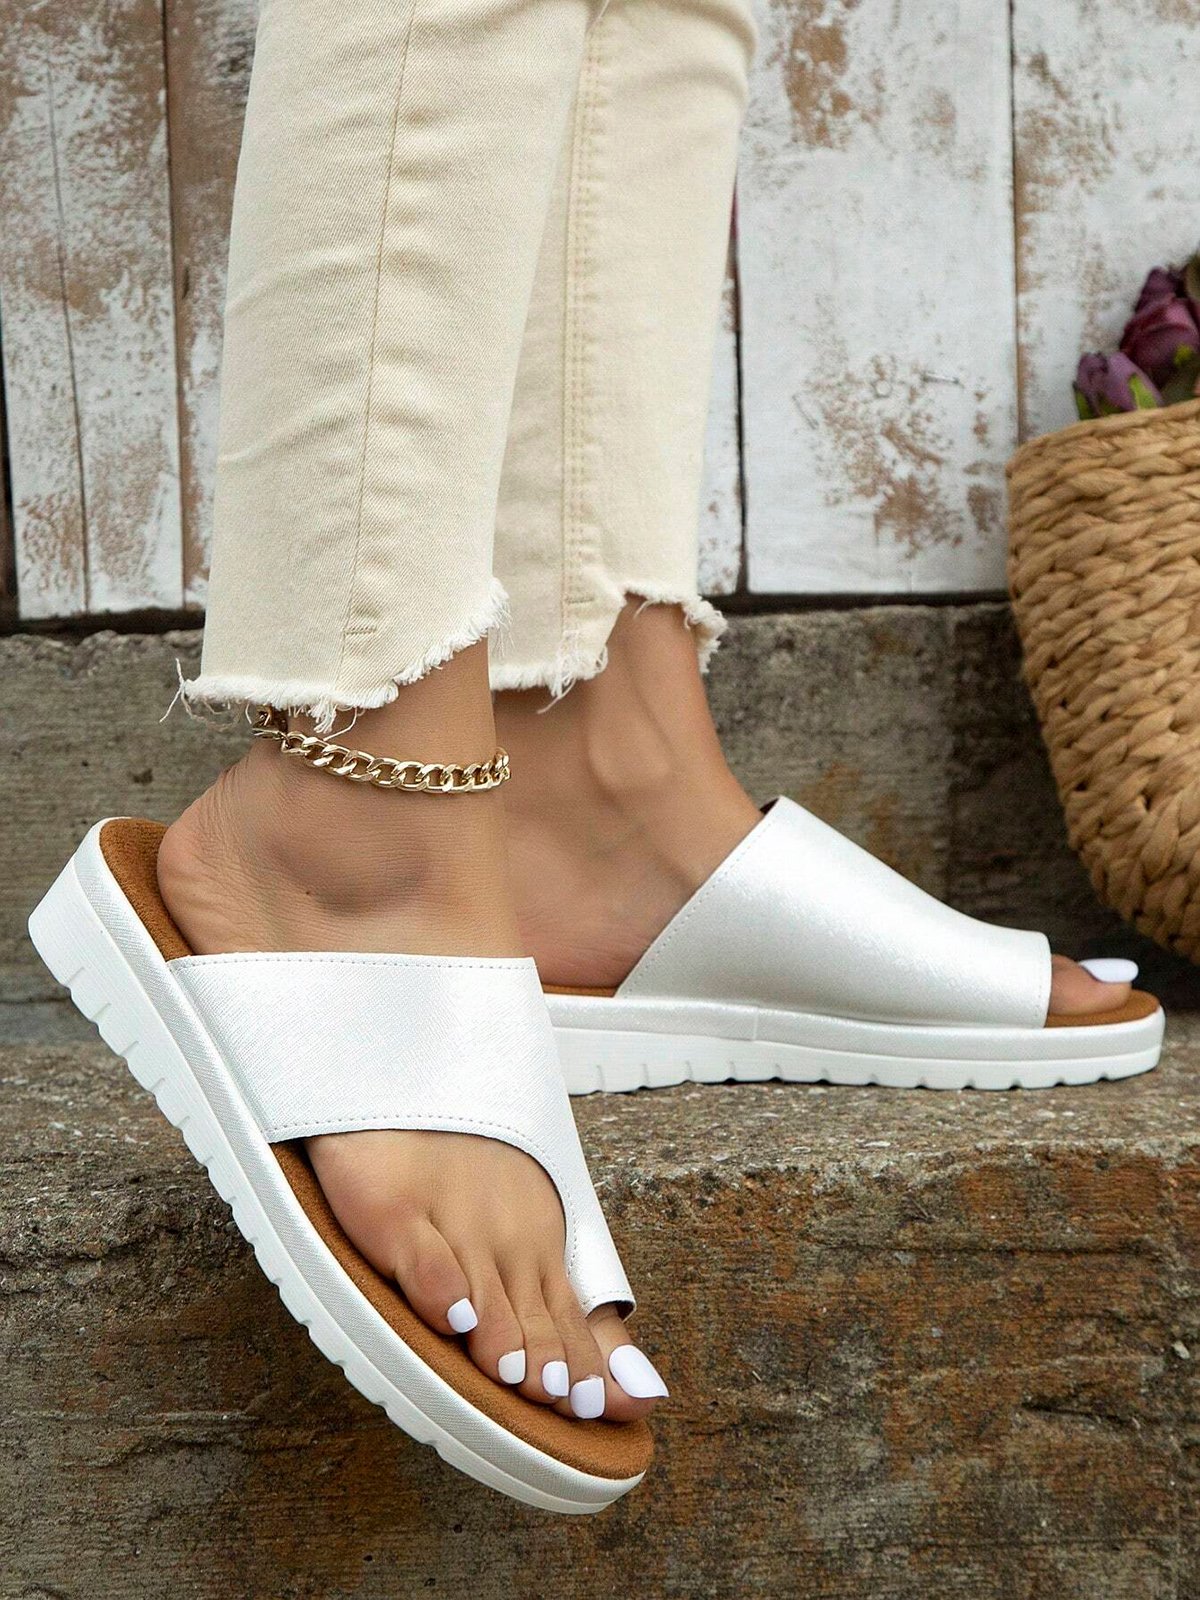 Women Summer Casual Low Heel Open Toe Casual Slide Sandals